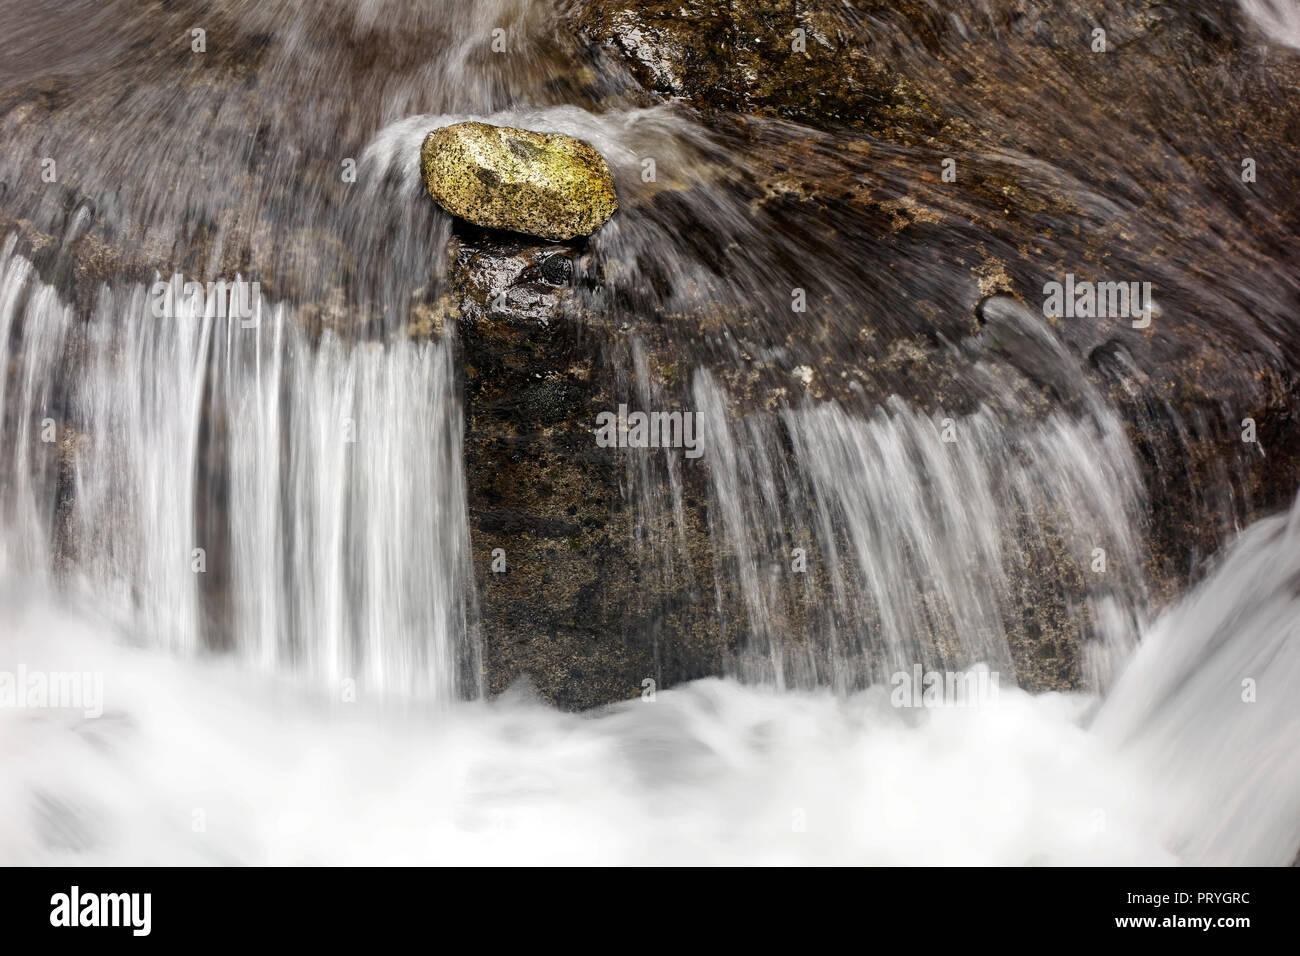 Stone se encuentra delante de una pequeña cascada de corriente, corriente de montaña, el simbolismo, la tenacidad, todos contra uno Foto de stock